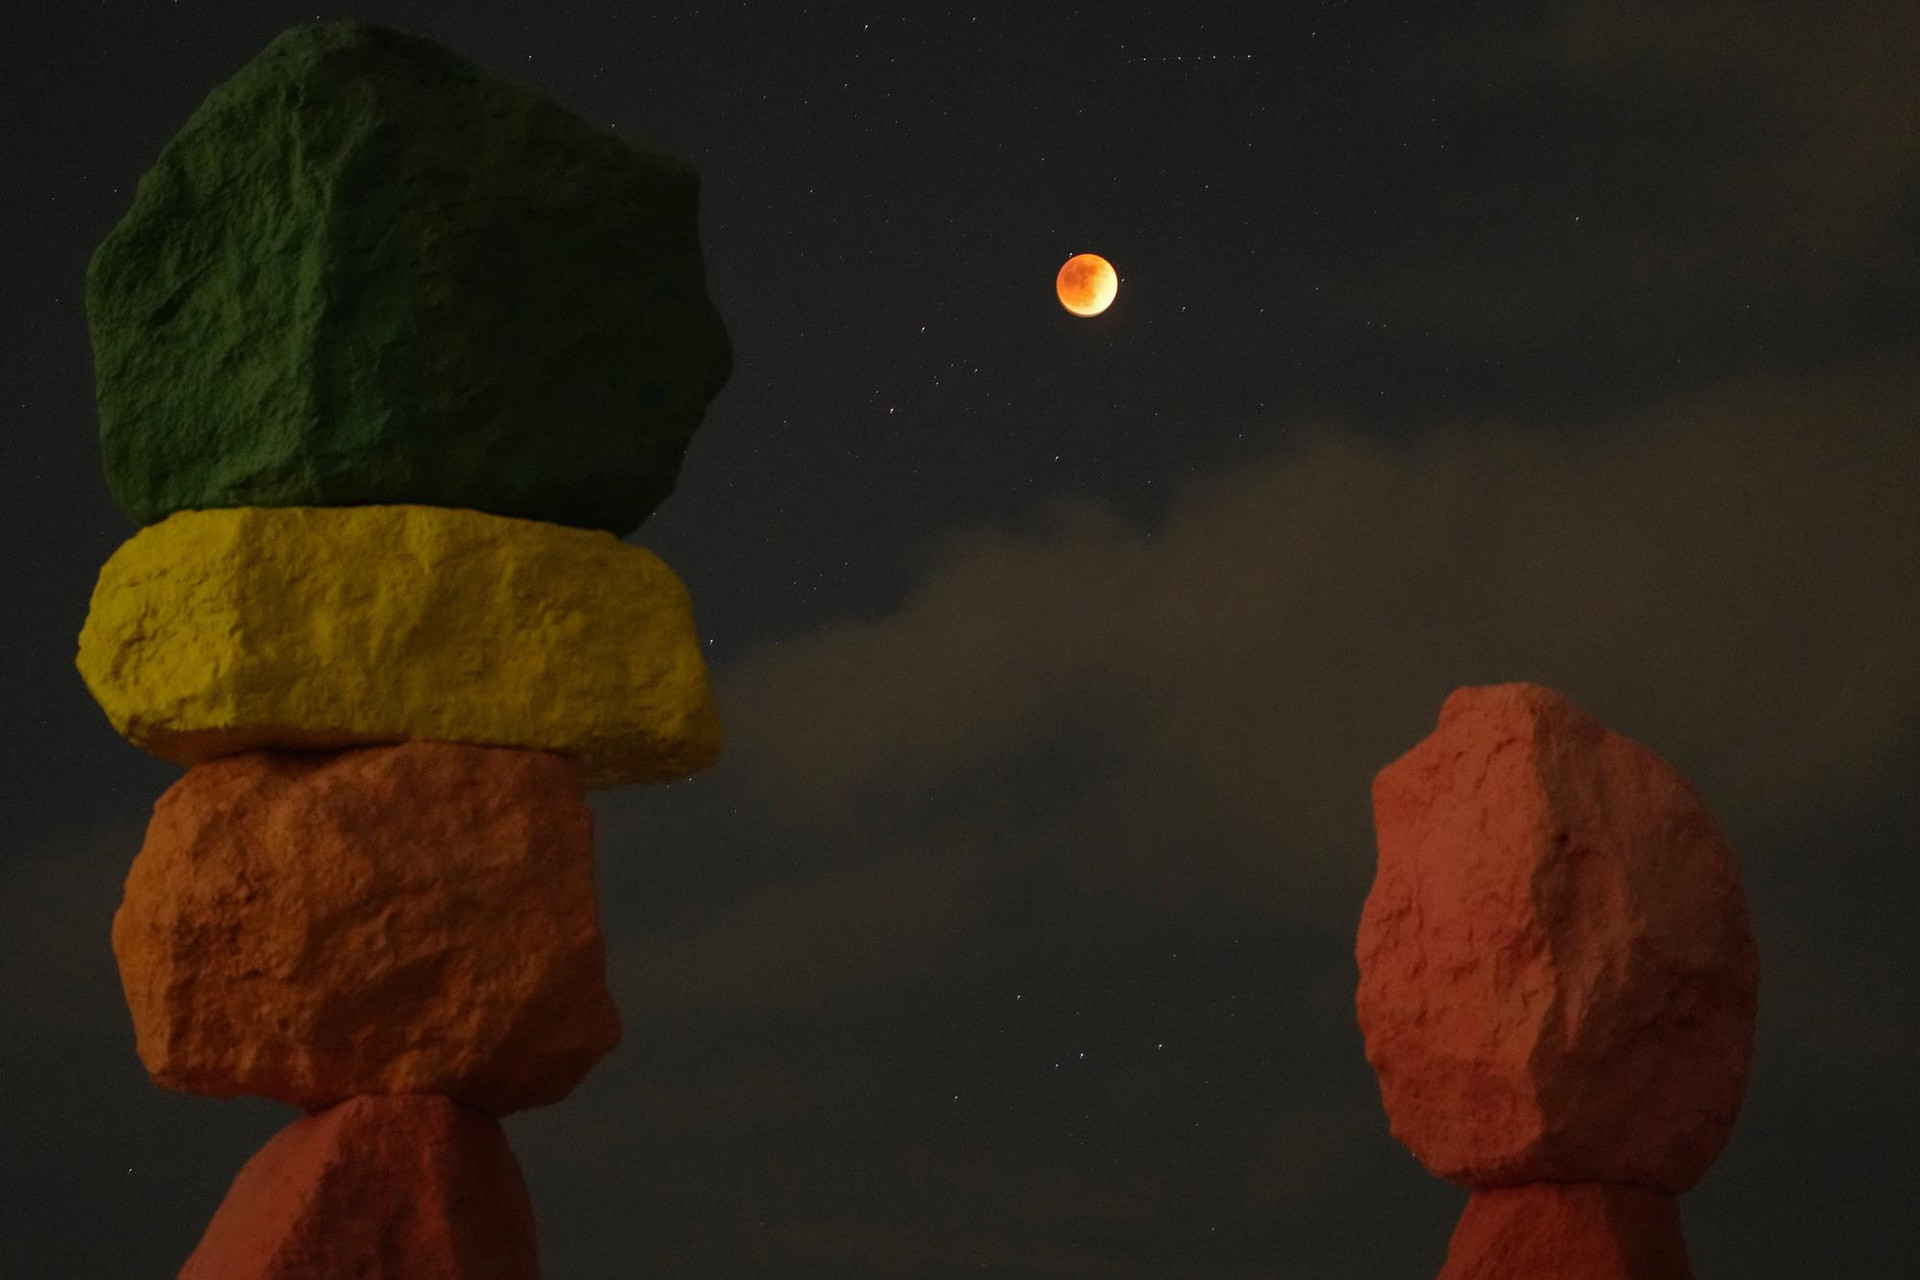 Nguyệt thực được nhìn thấy phía trên tác phẩm nghệ thuật “Bảy ngọn núi kỳ diệu” của nghệ sĩ Ugo Rondinone, sa mạc Nevada, Mỹ. Ảnh: AP.